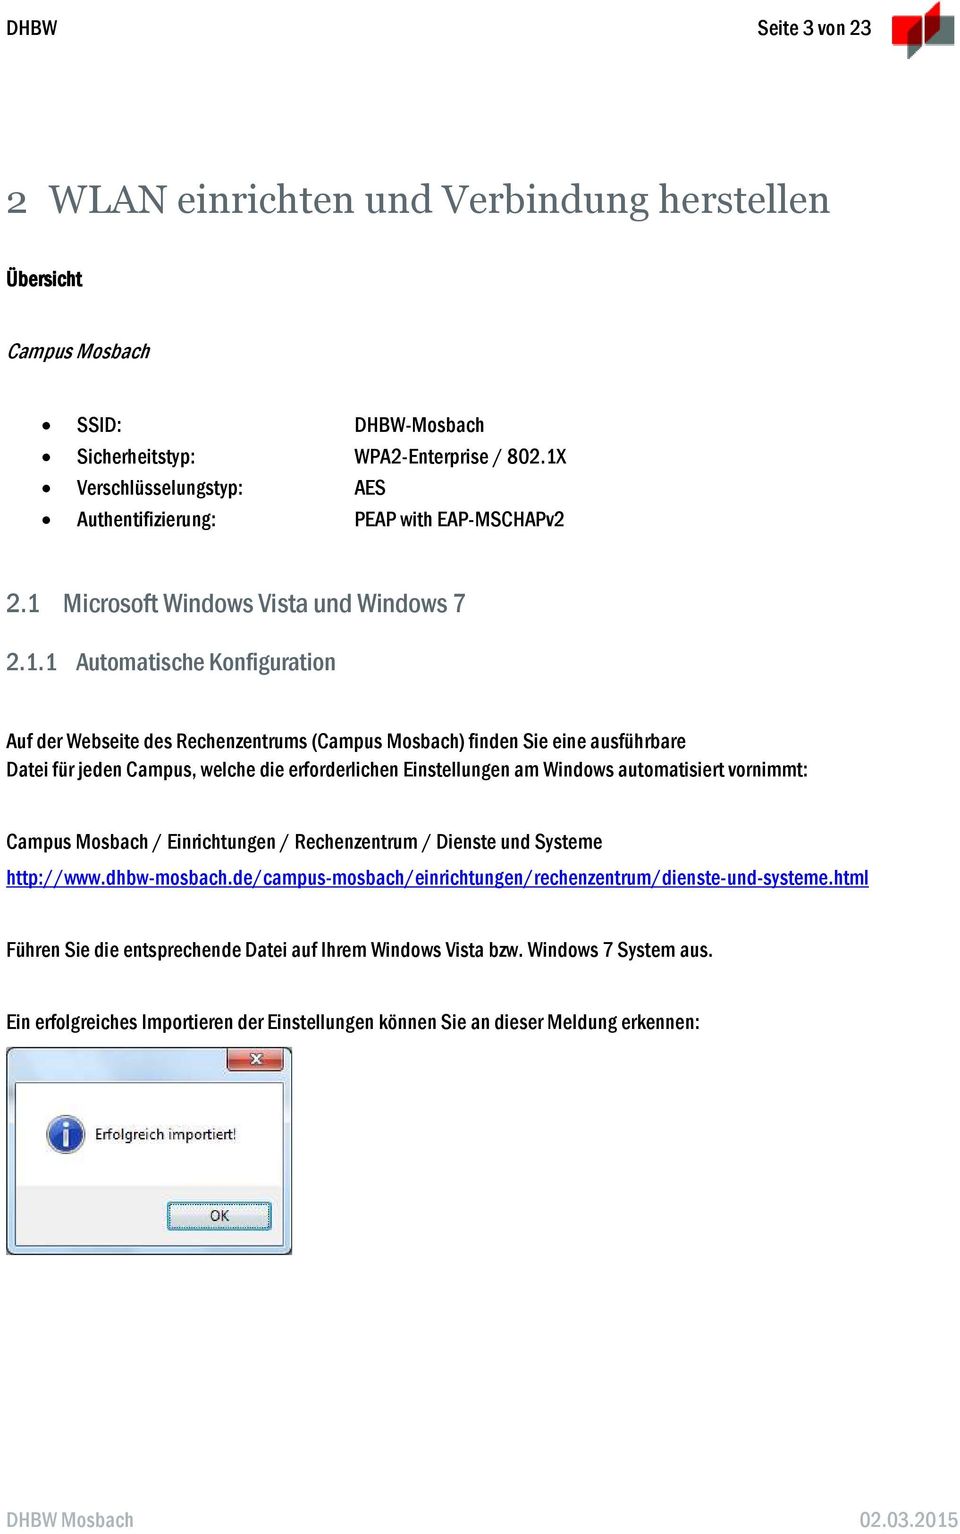 finden Sie eine ausführbare Datei für jeden Campus, welche die erforderlichen Einstellungen am Windows automatisiert vornimmt: Campus Mosbach / Einrichtungen / Rechenzentrum / Dienste und Systeme